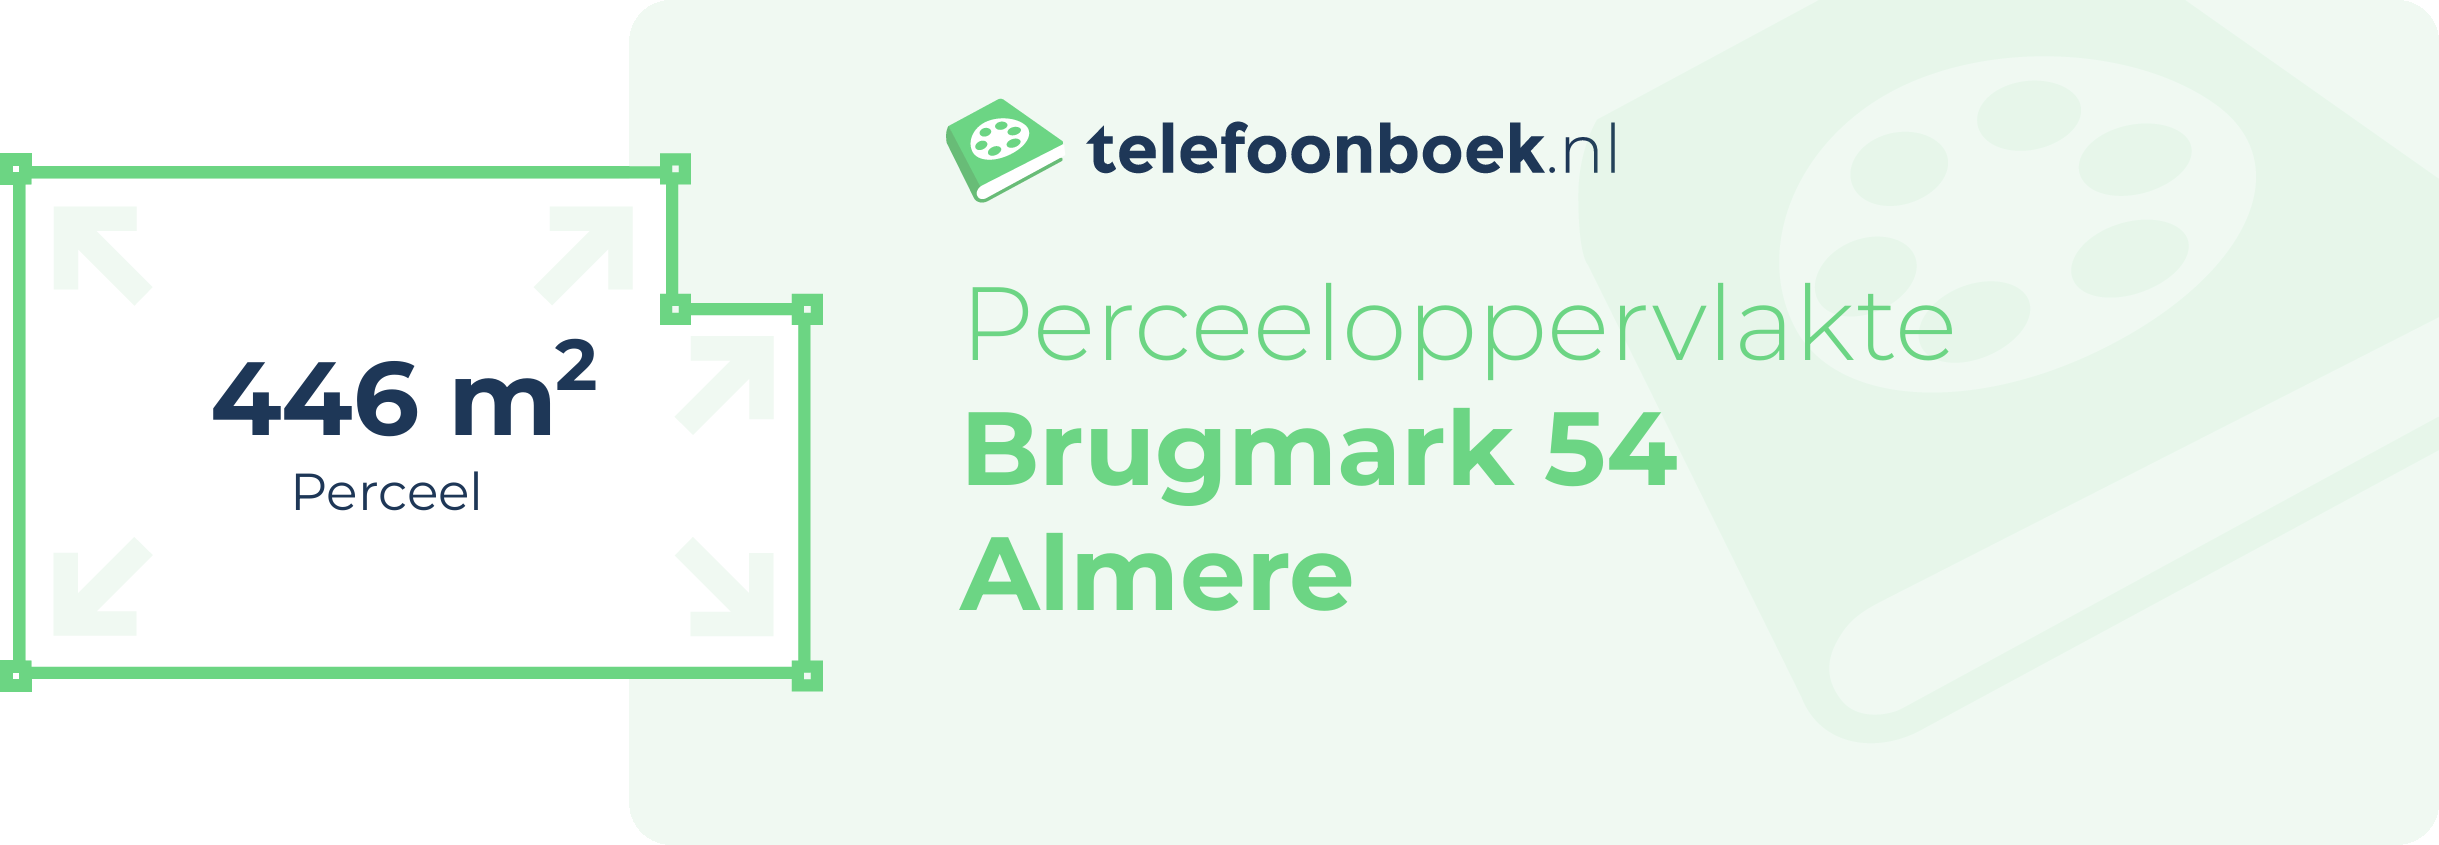 Perceeloppervlakte Brugmark 54 Almere